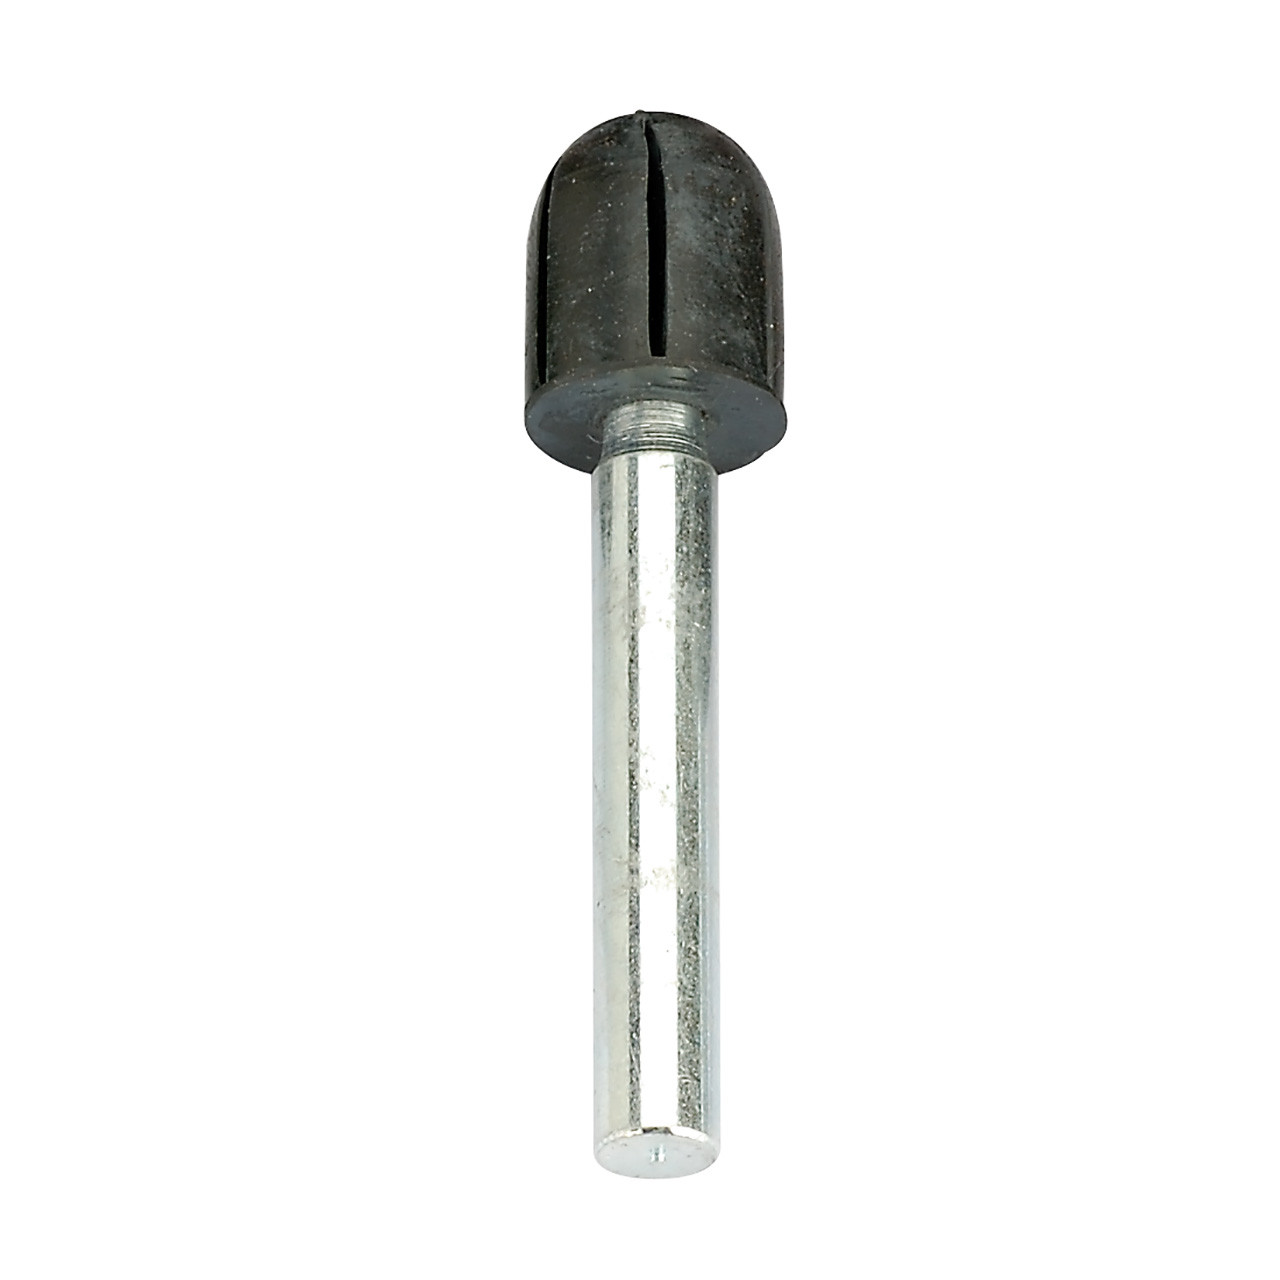 Abrasive Cap Holder - Round Top 1/2" x 1-1/16", 1/4" Shank